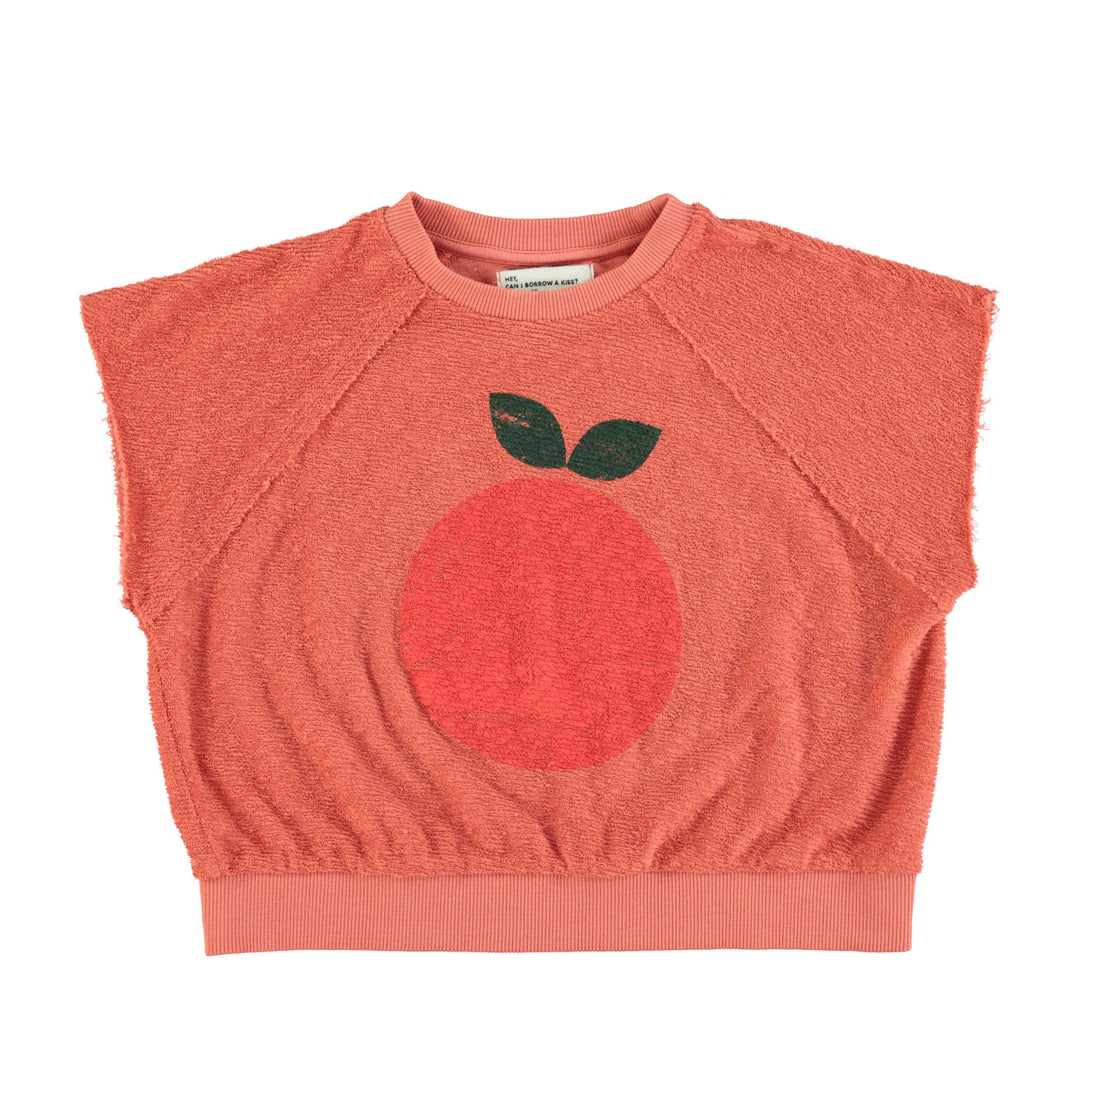 Piupiuchick Terracotta Apple Print Sleeveless Sweatshirt